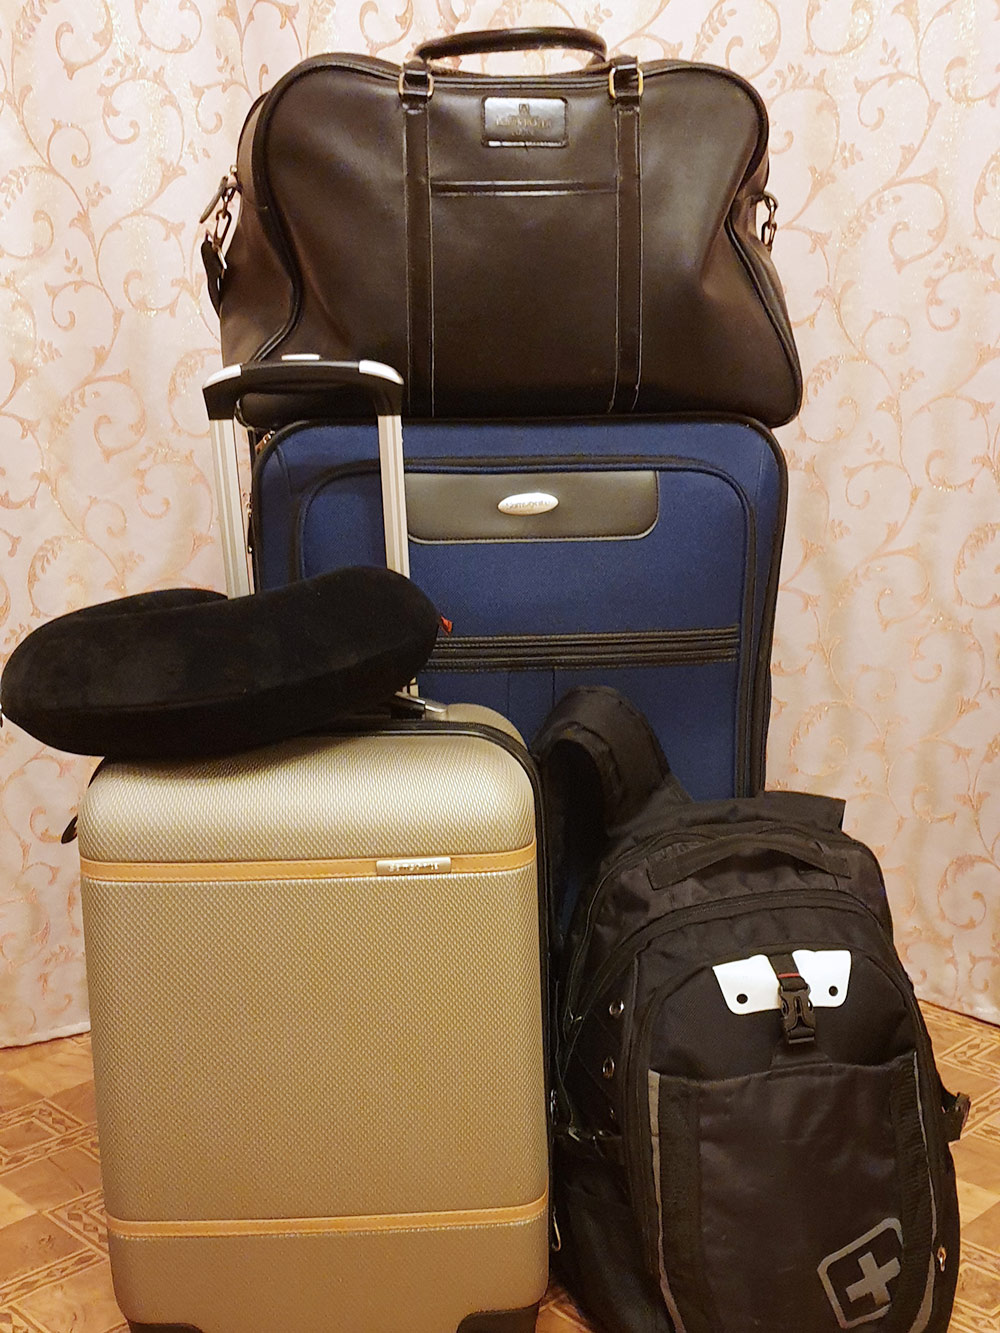 Вот сколько чемоданов и сумок я брала с собой на второй контракт. Еще примерно столько же взял молодой человек